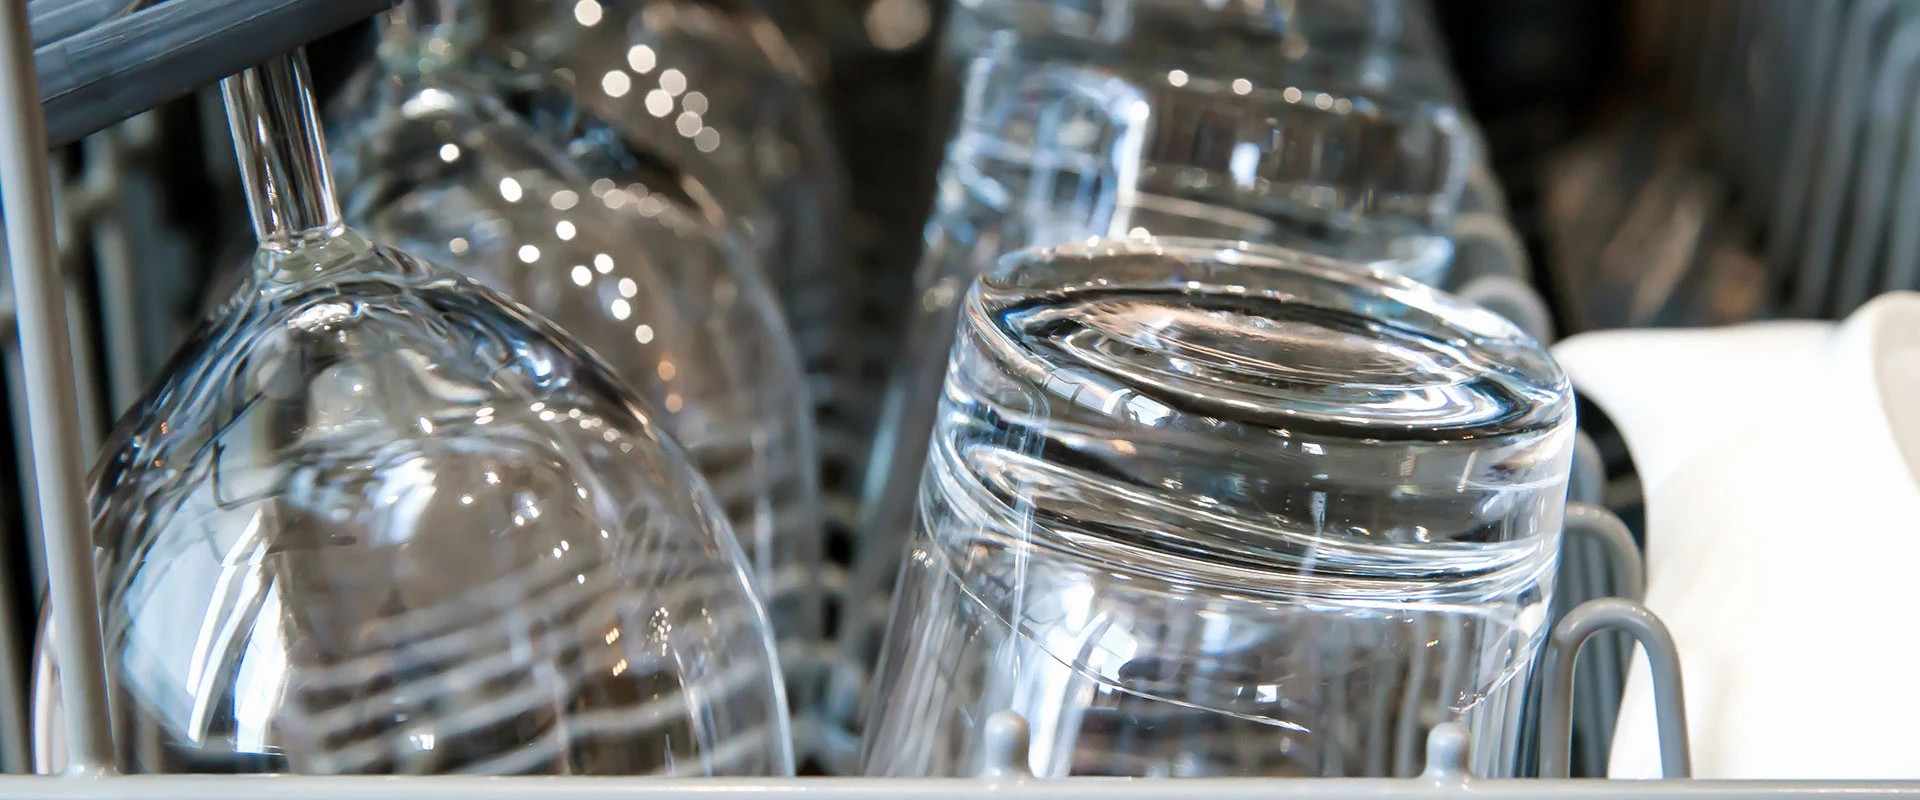 Как сохранить стеклянные предметы в посудомоечной машине?